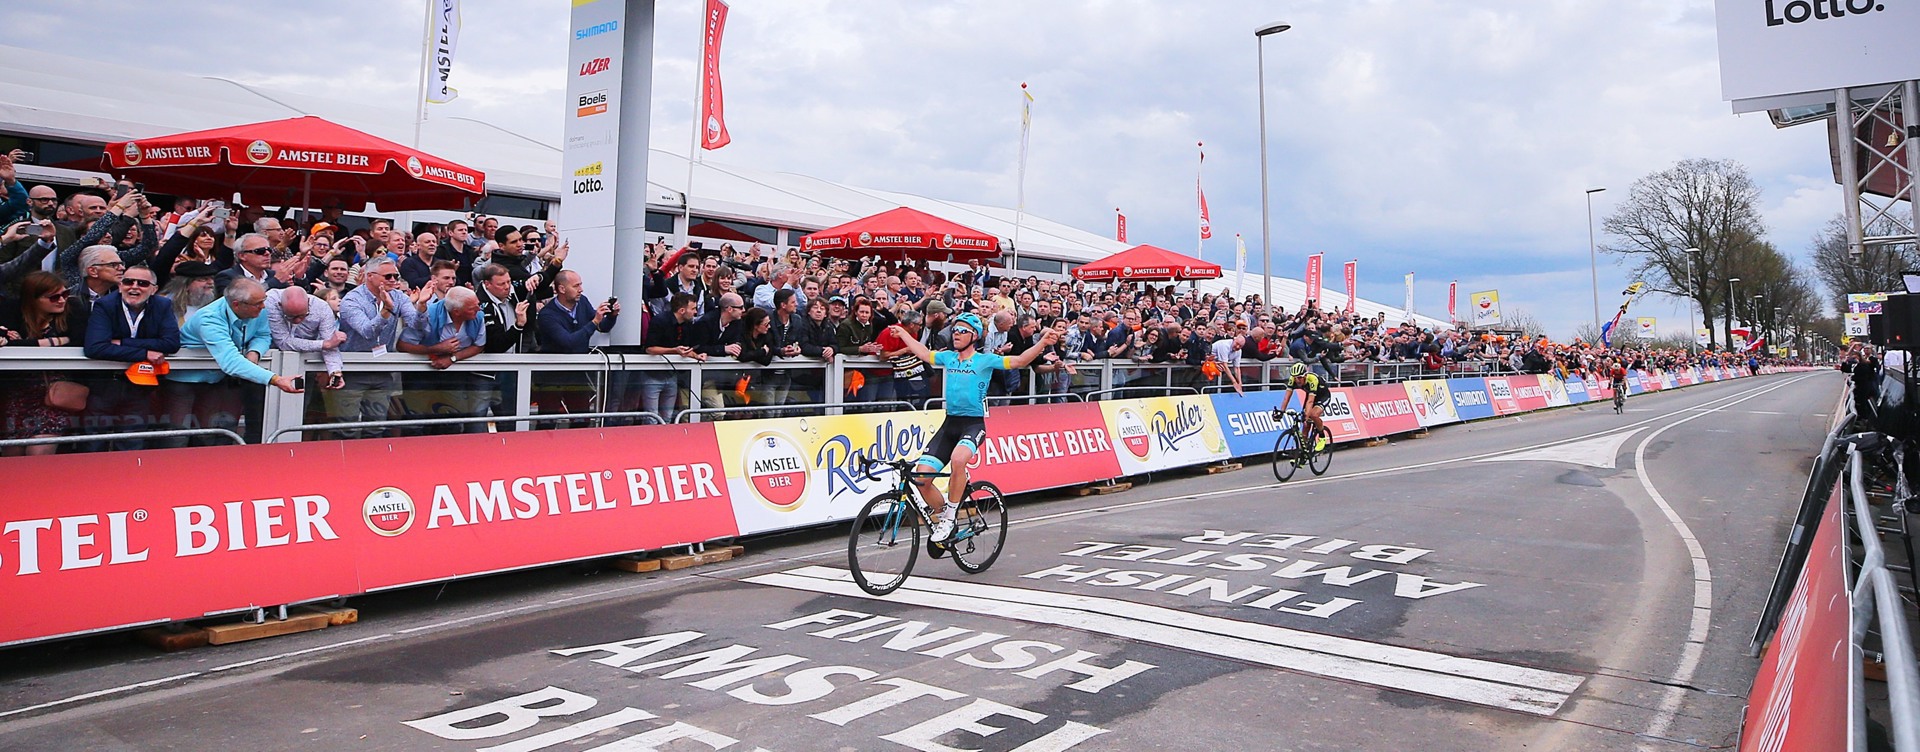 Bezoek hét wielrenevenement in Limburg:
de Amstel Gold Race